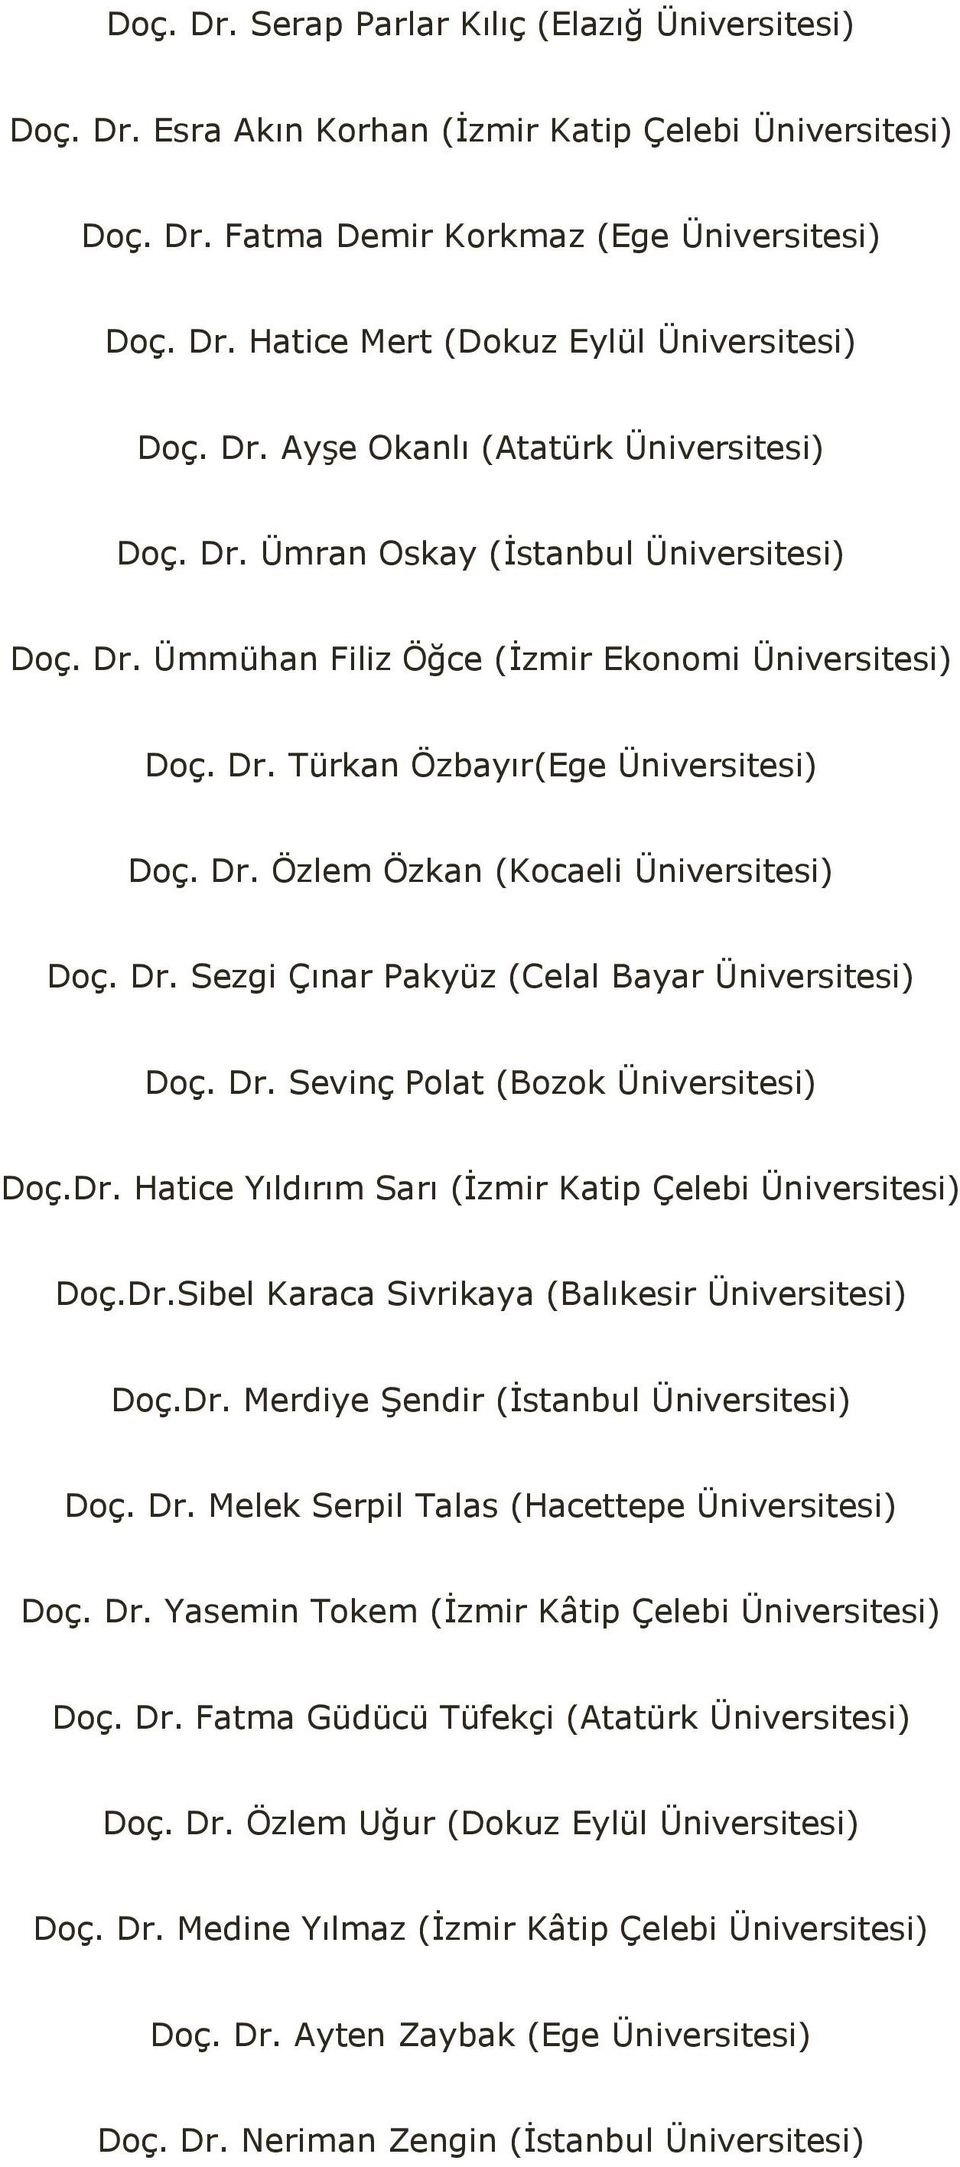 Dr. Sezgi Çınar Pakyüz (Celal Bayar Üniversitesi) Doç. Dr. Sevinç Polat (Bozok Üniversitesi) Doç.Dr. Hatice Yıldırım Sarı (İzmir Katip Çelebi Üniversitesi) Doç.Dr.Sibel Karaca Sivrikaya (Balıkesir Üniversitesi) Doç.